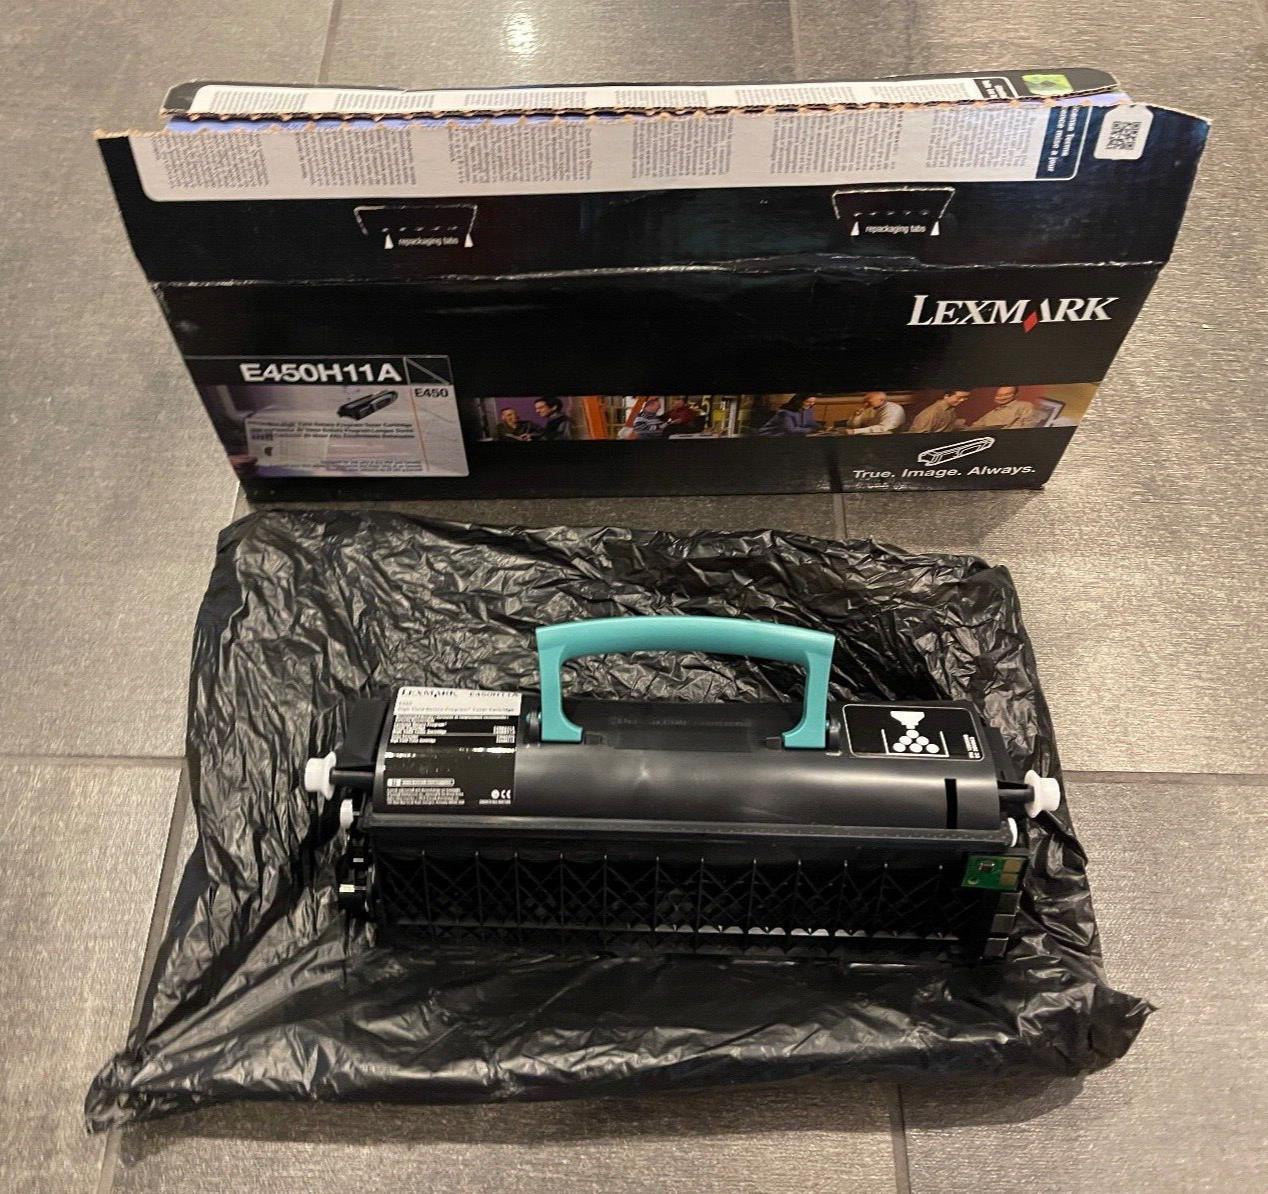 Genuine Lexmark E450H11A 24B0741 Toner Cartridge Black E450 E450D